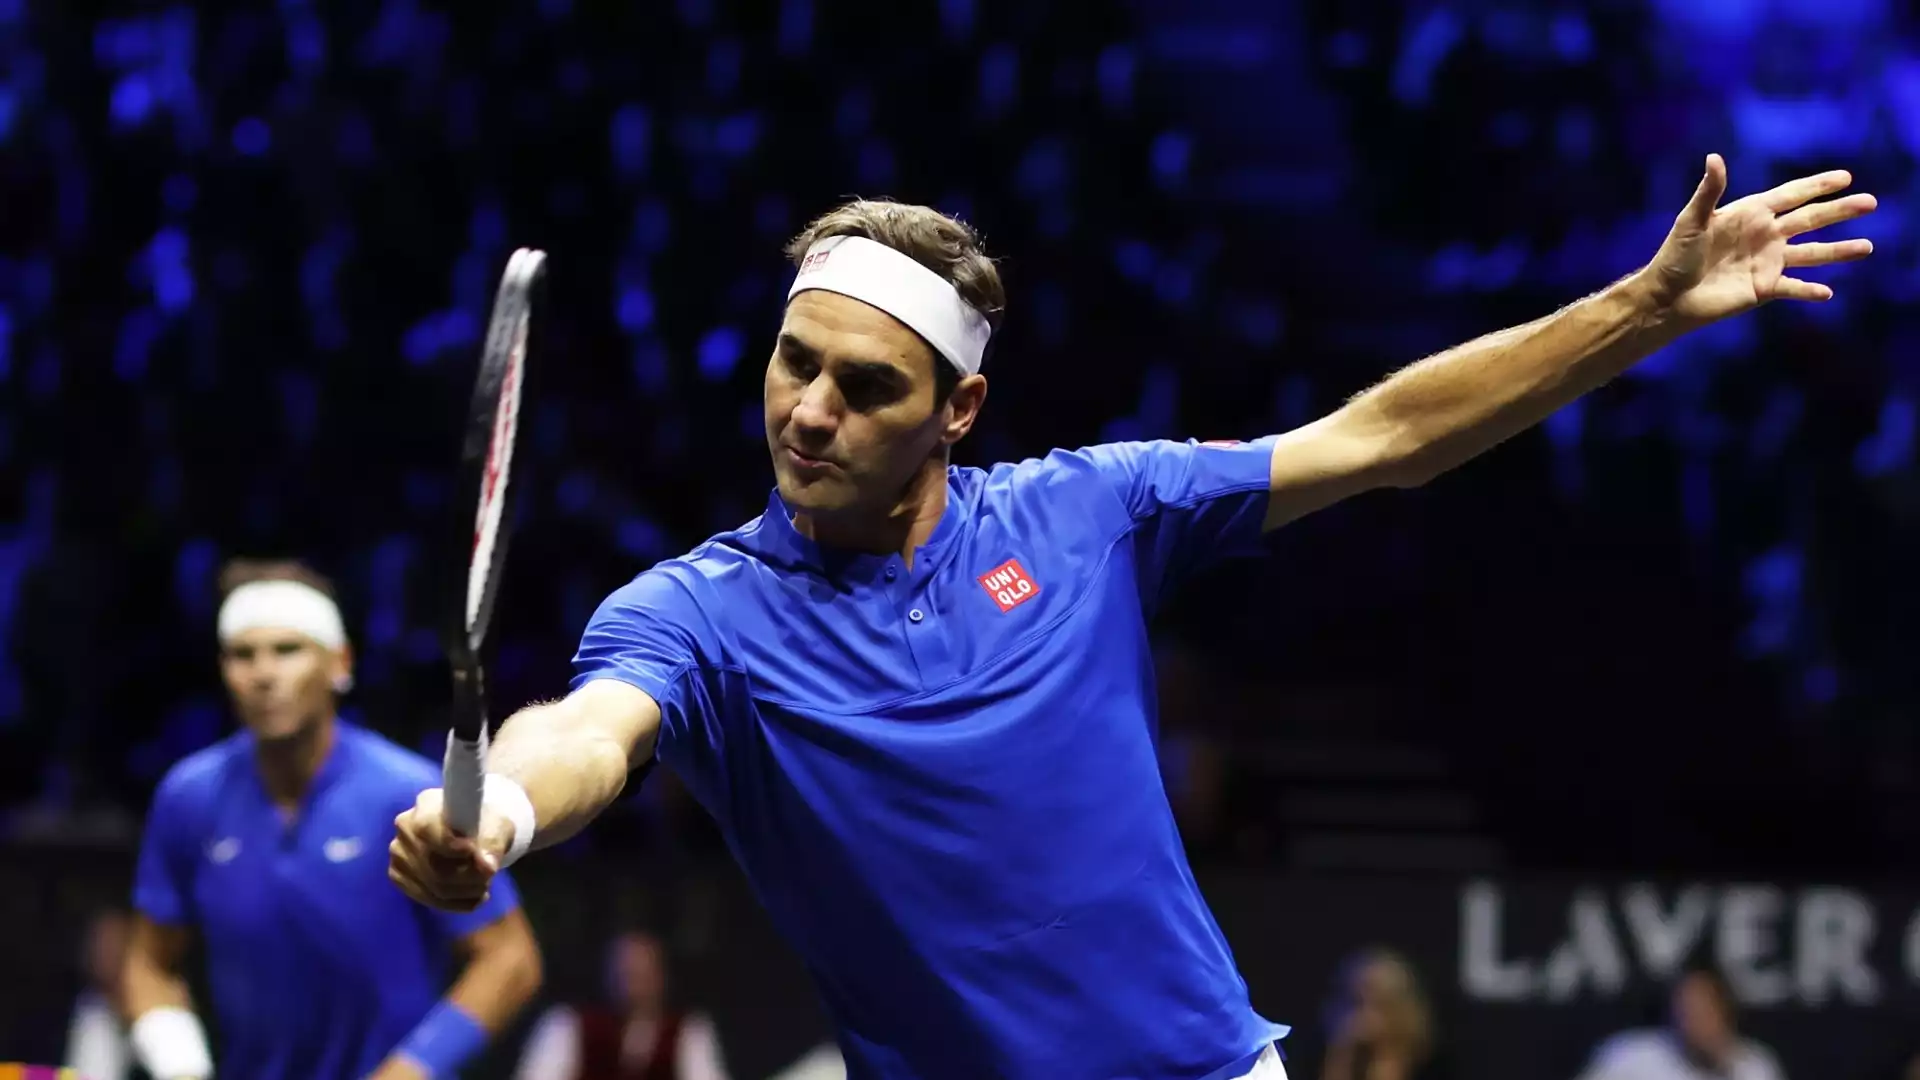 Roger Federer (Svizzera): guadagni stimati 1.38 miliardi di dollari